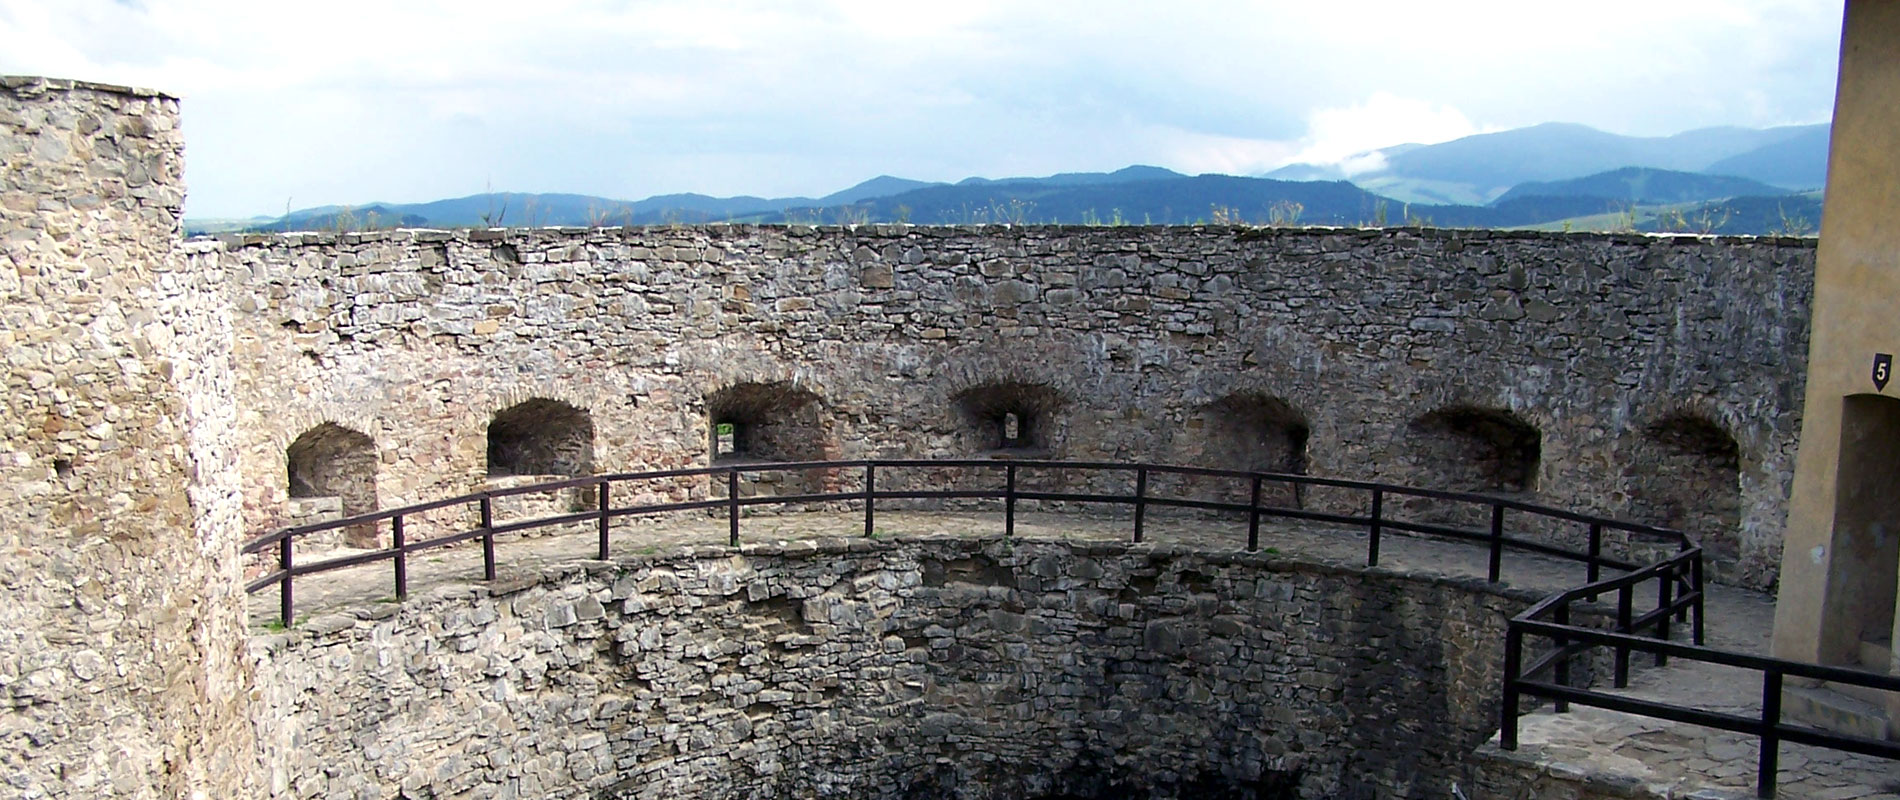 Ľubovniansky hrad je jeden z najzaujímavejších hradov východného Slovenska.